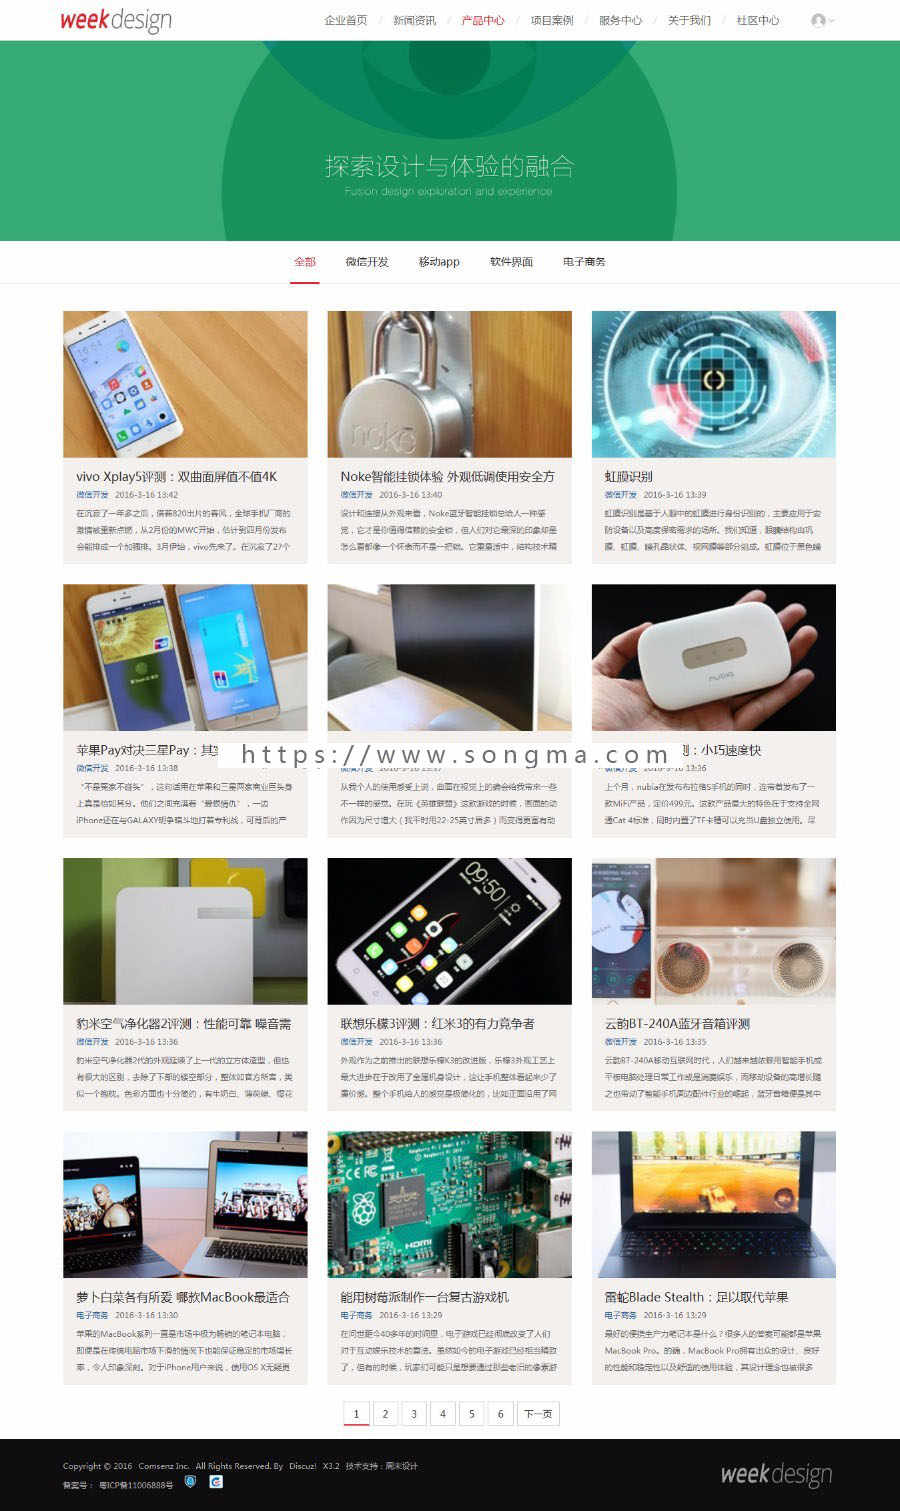 高端企业交互式模板week_jiaohu V1.1商业版Discuz模板dz商业模板